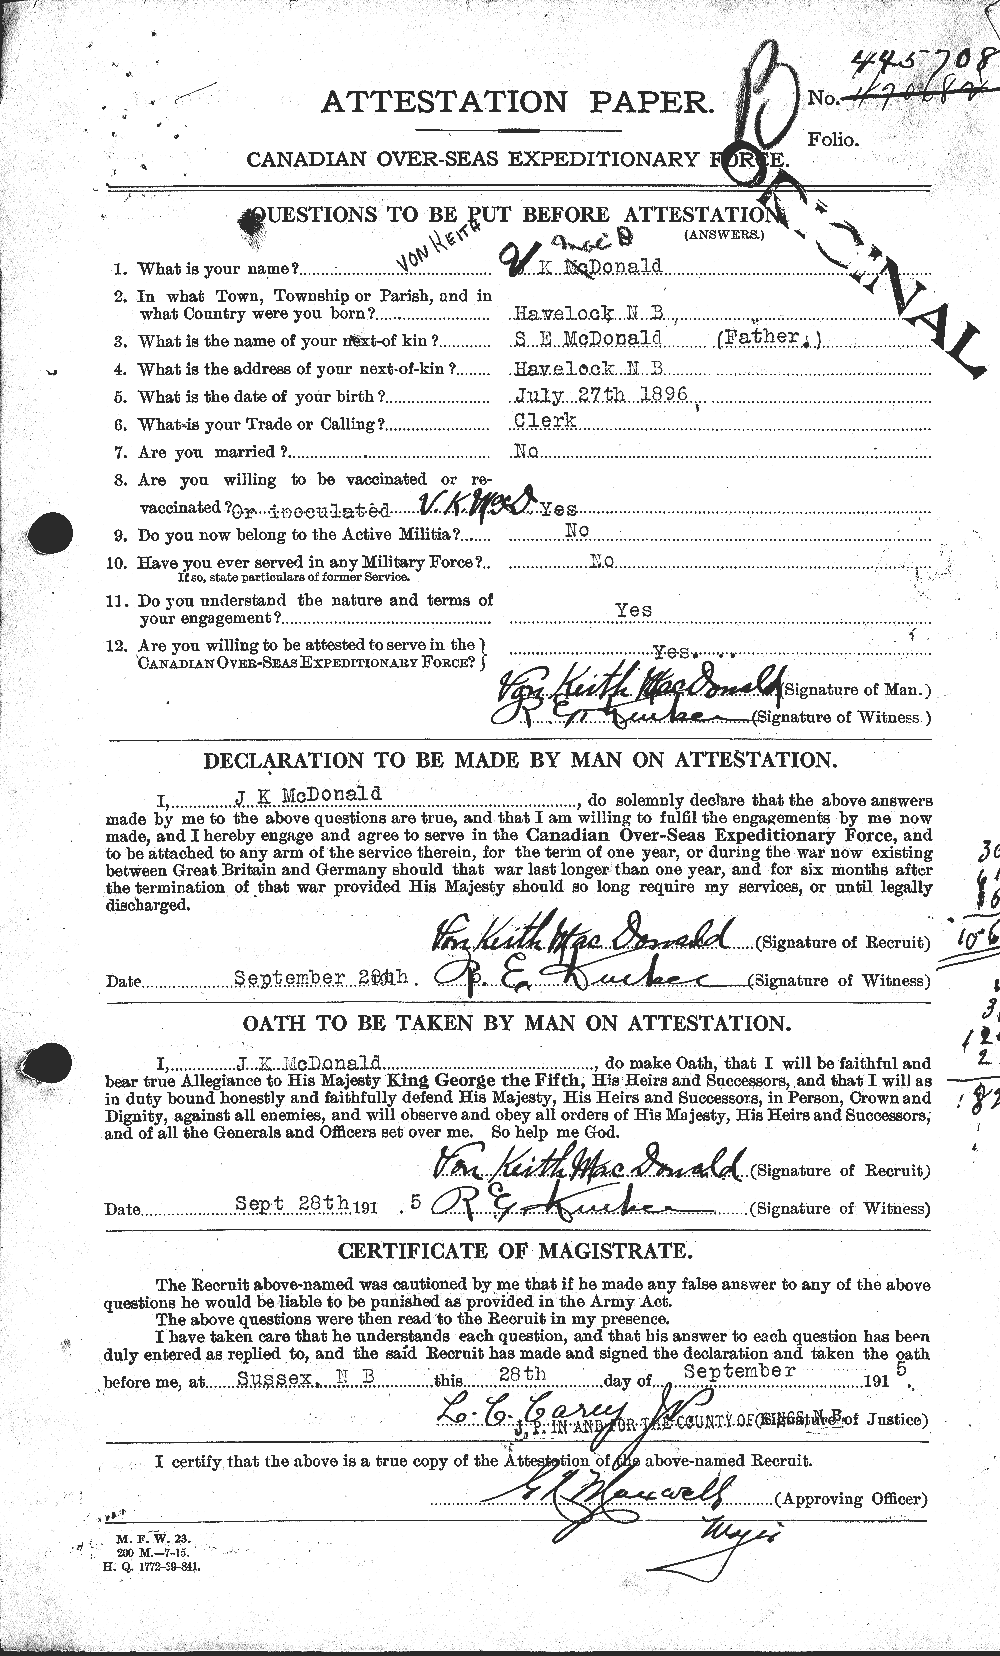 Dossiers du Personnel de la Première Guerre mondiale - CEC 519902a